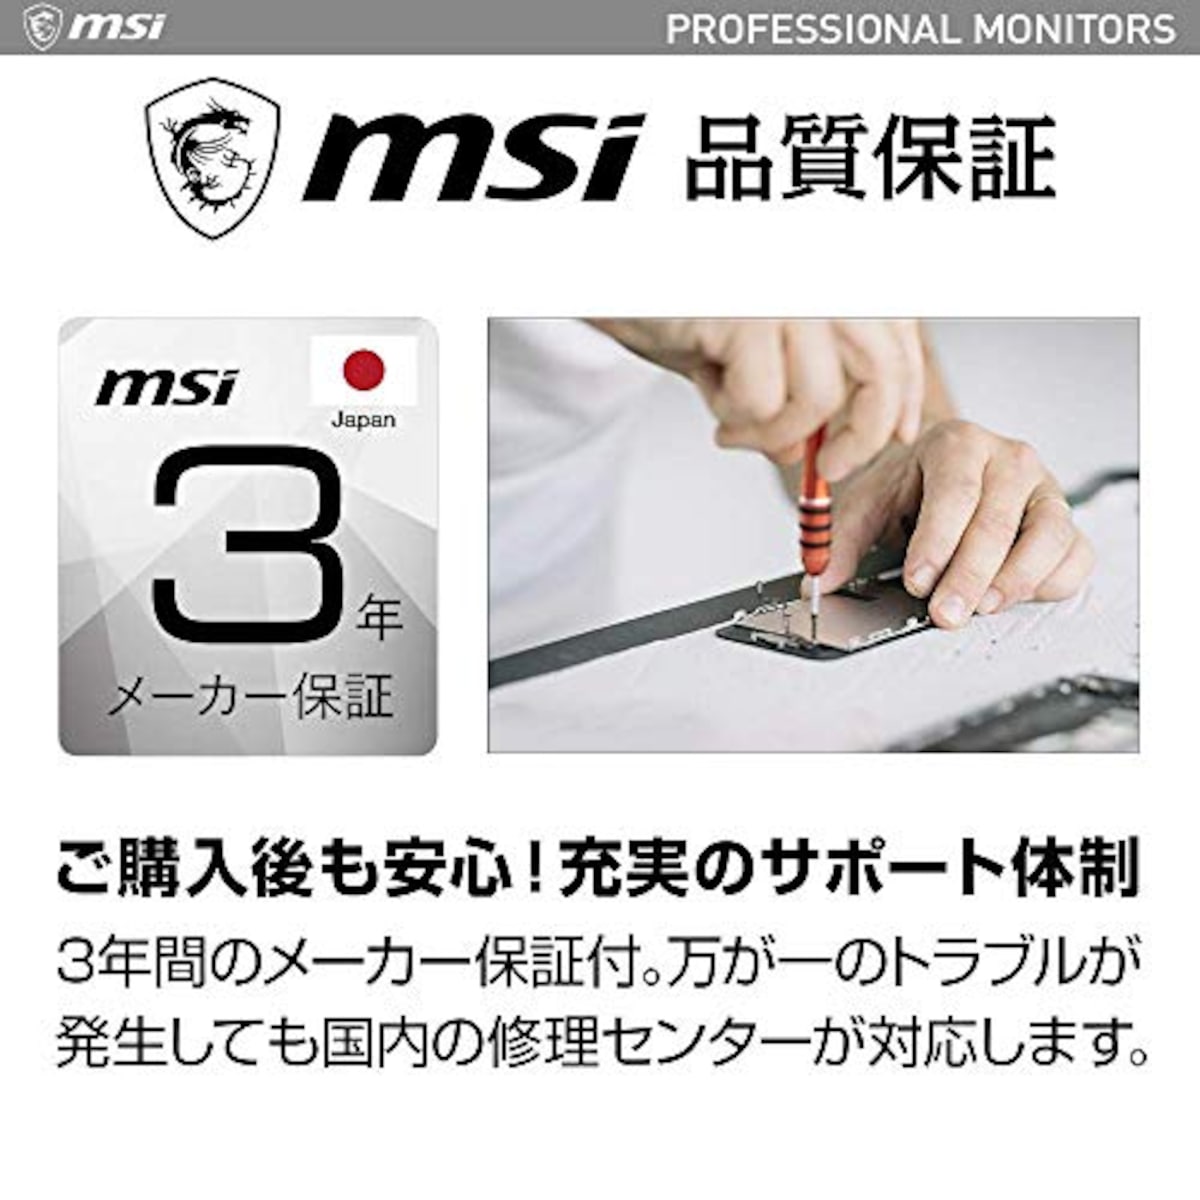  【Amazon.co.jp限定】 MSI Modern MD241PW モニター 薄型 IPSパネル スピーカー搭載 フルHD/23.8インチ/HDMI/USB Type-C/ブルーライトカット/アンチフリッカー/VESA対応/ピボット・角度・高さ調整/3年保証画像7 